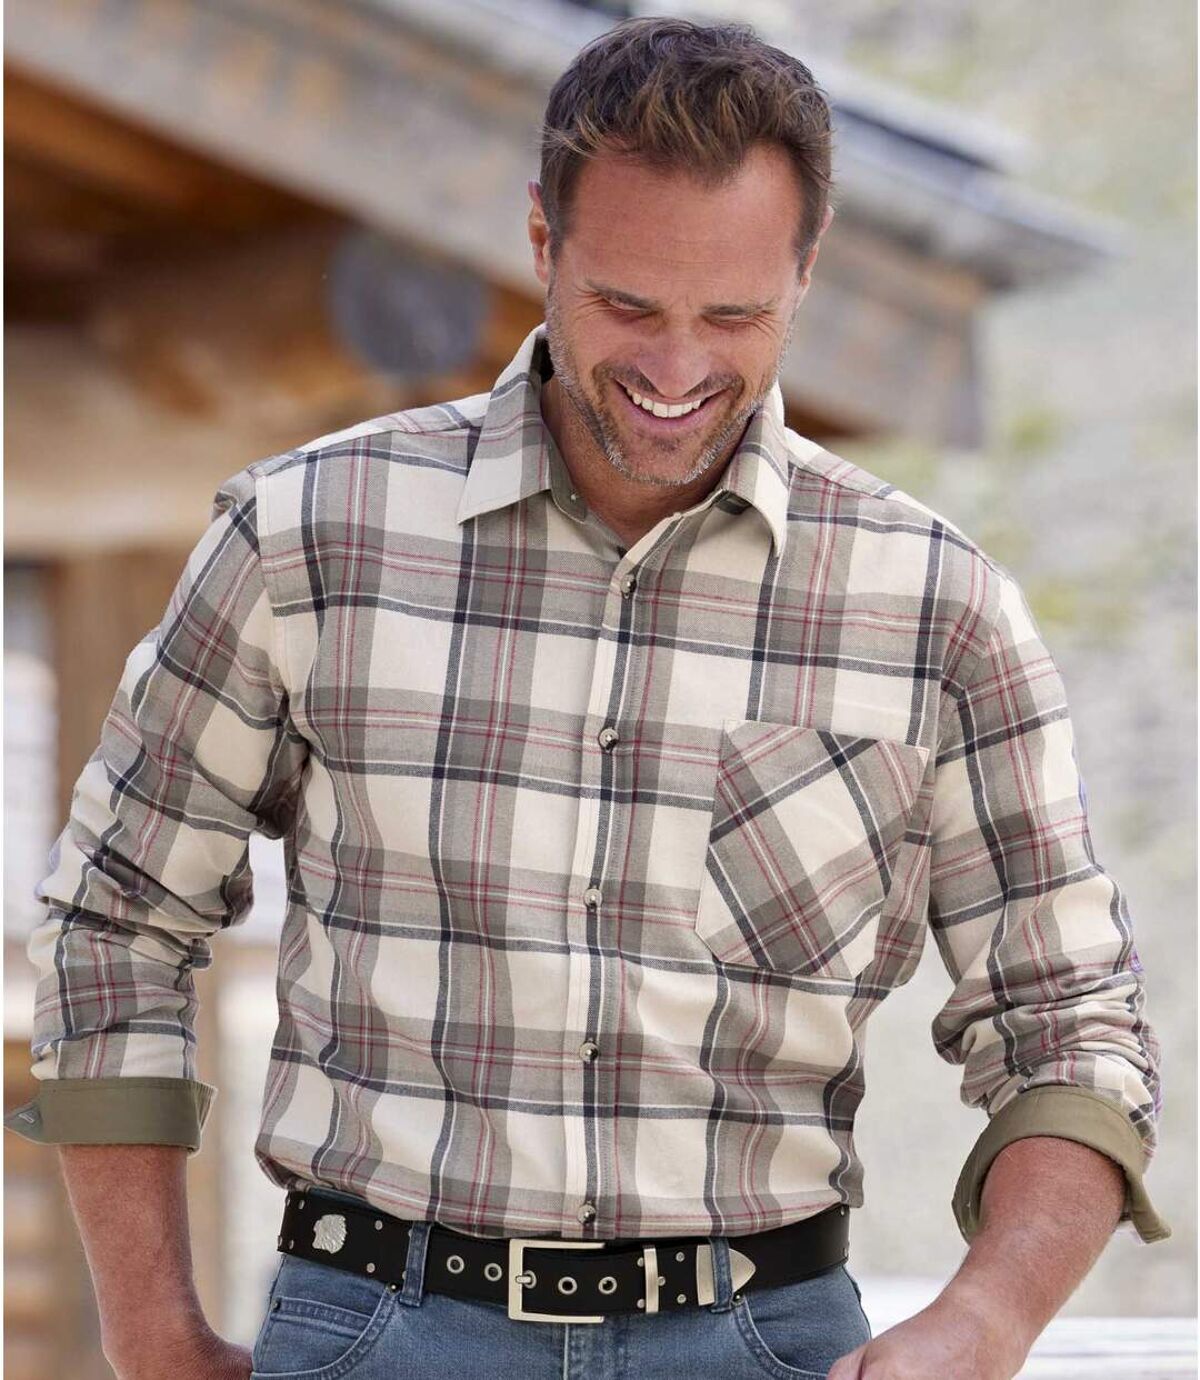 Men's Beige Checked Flannel Shirt Atlas For Men